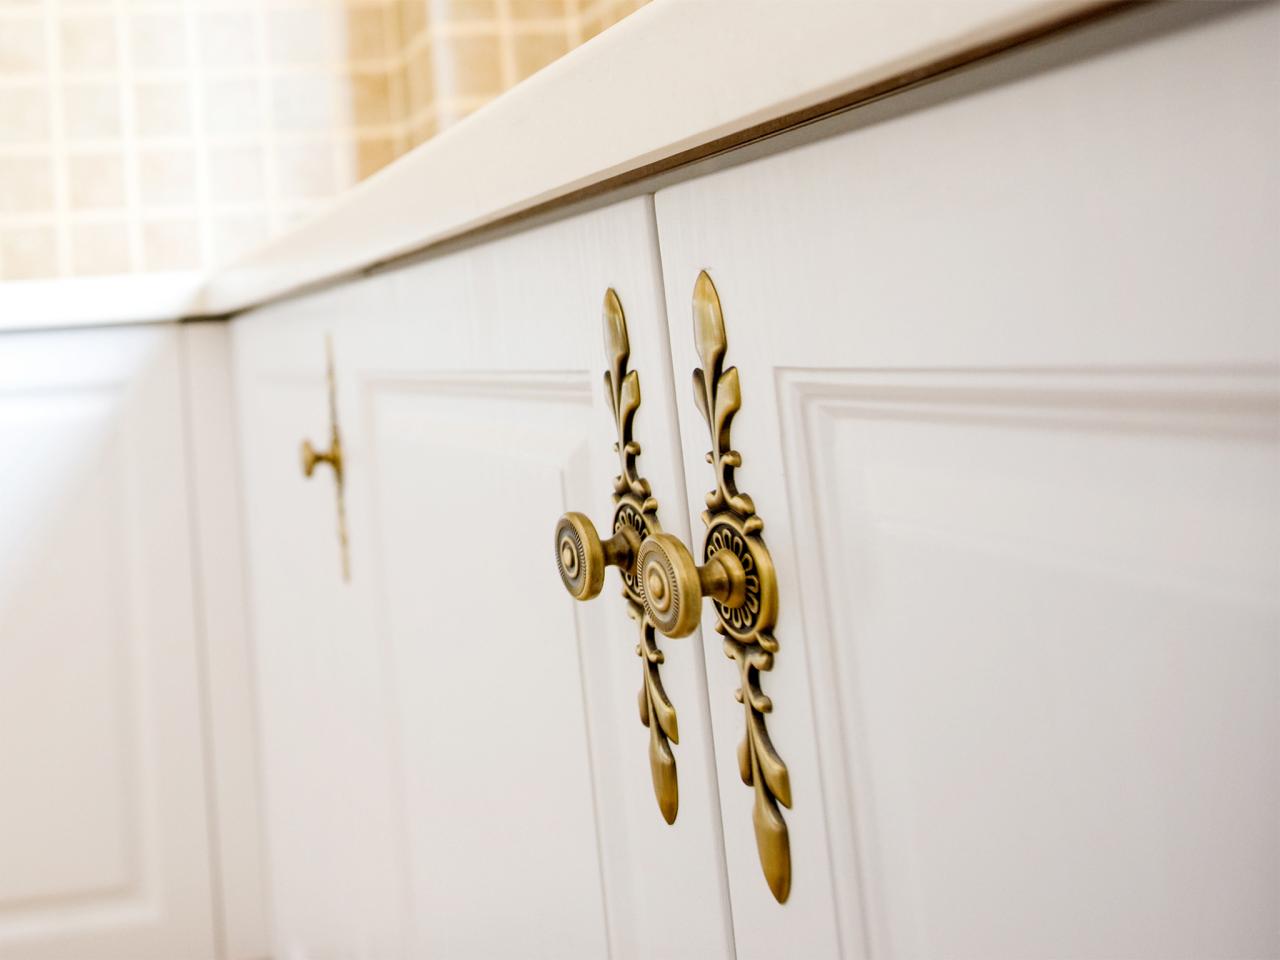 Kitchen Cabinet Door Accessories And, Kitchen Cabinet Components And Accessories